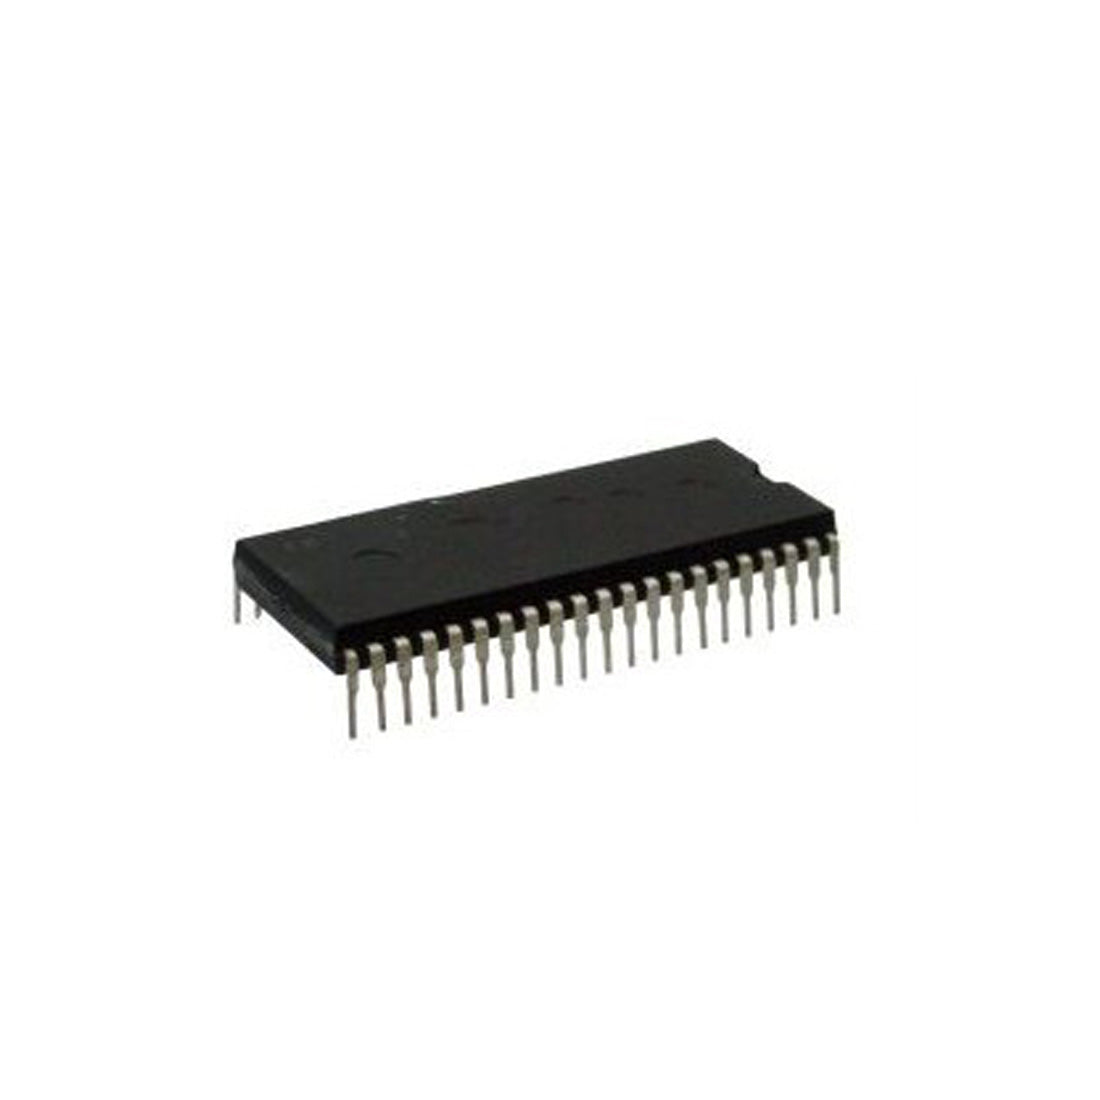 STV2110 Componente elettronico, circuito integrato, transistor, 42 contatti